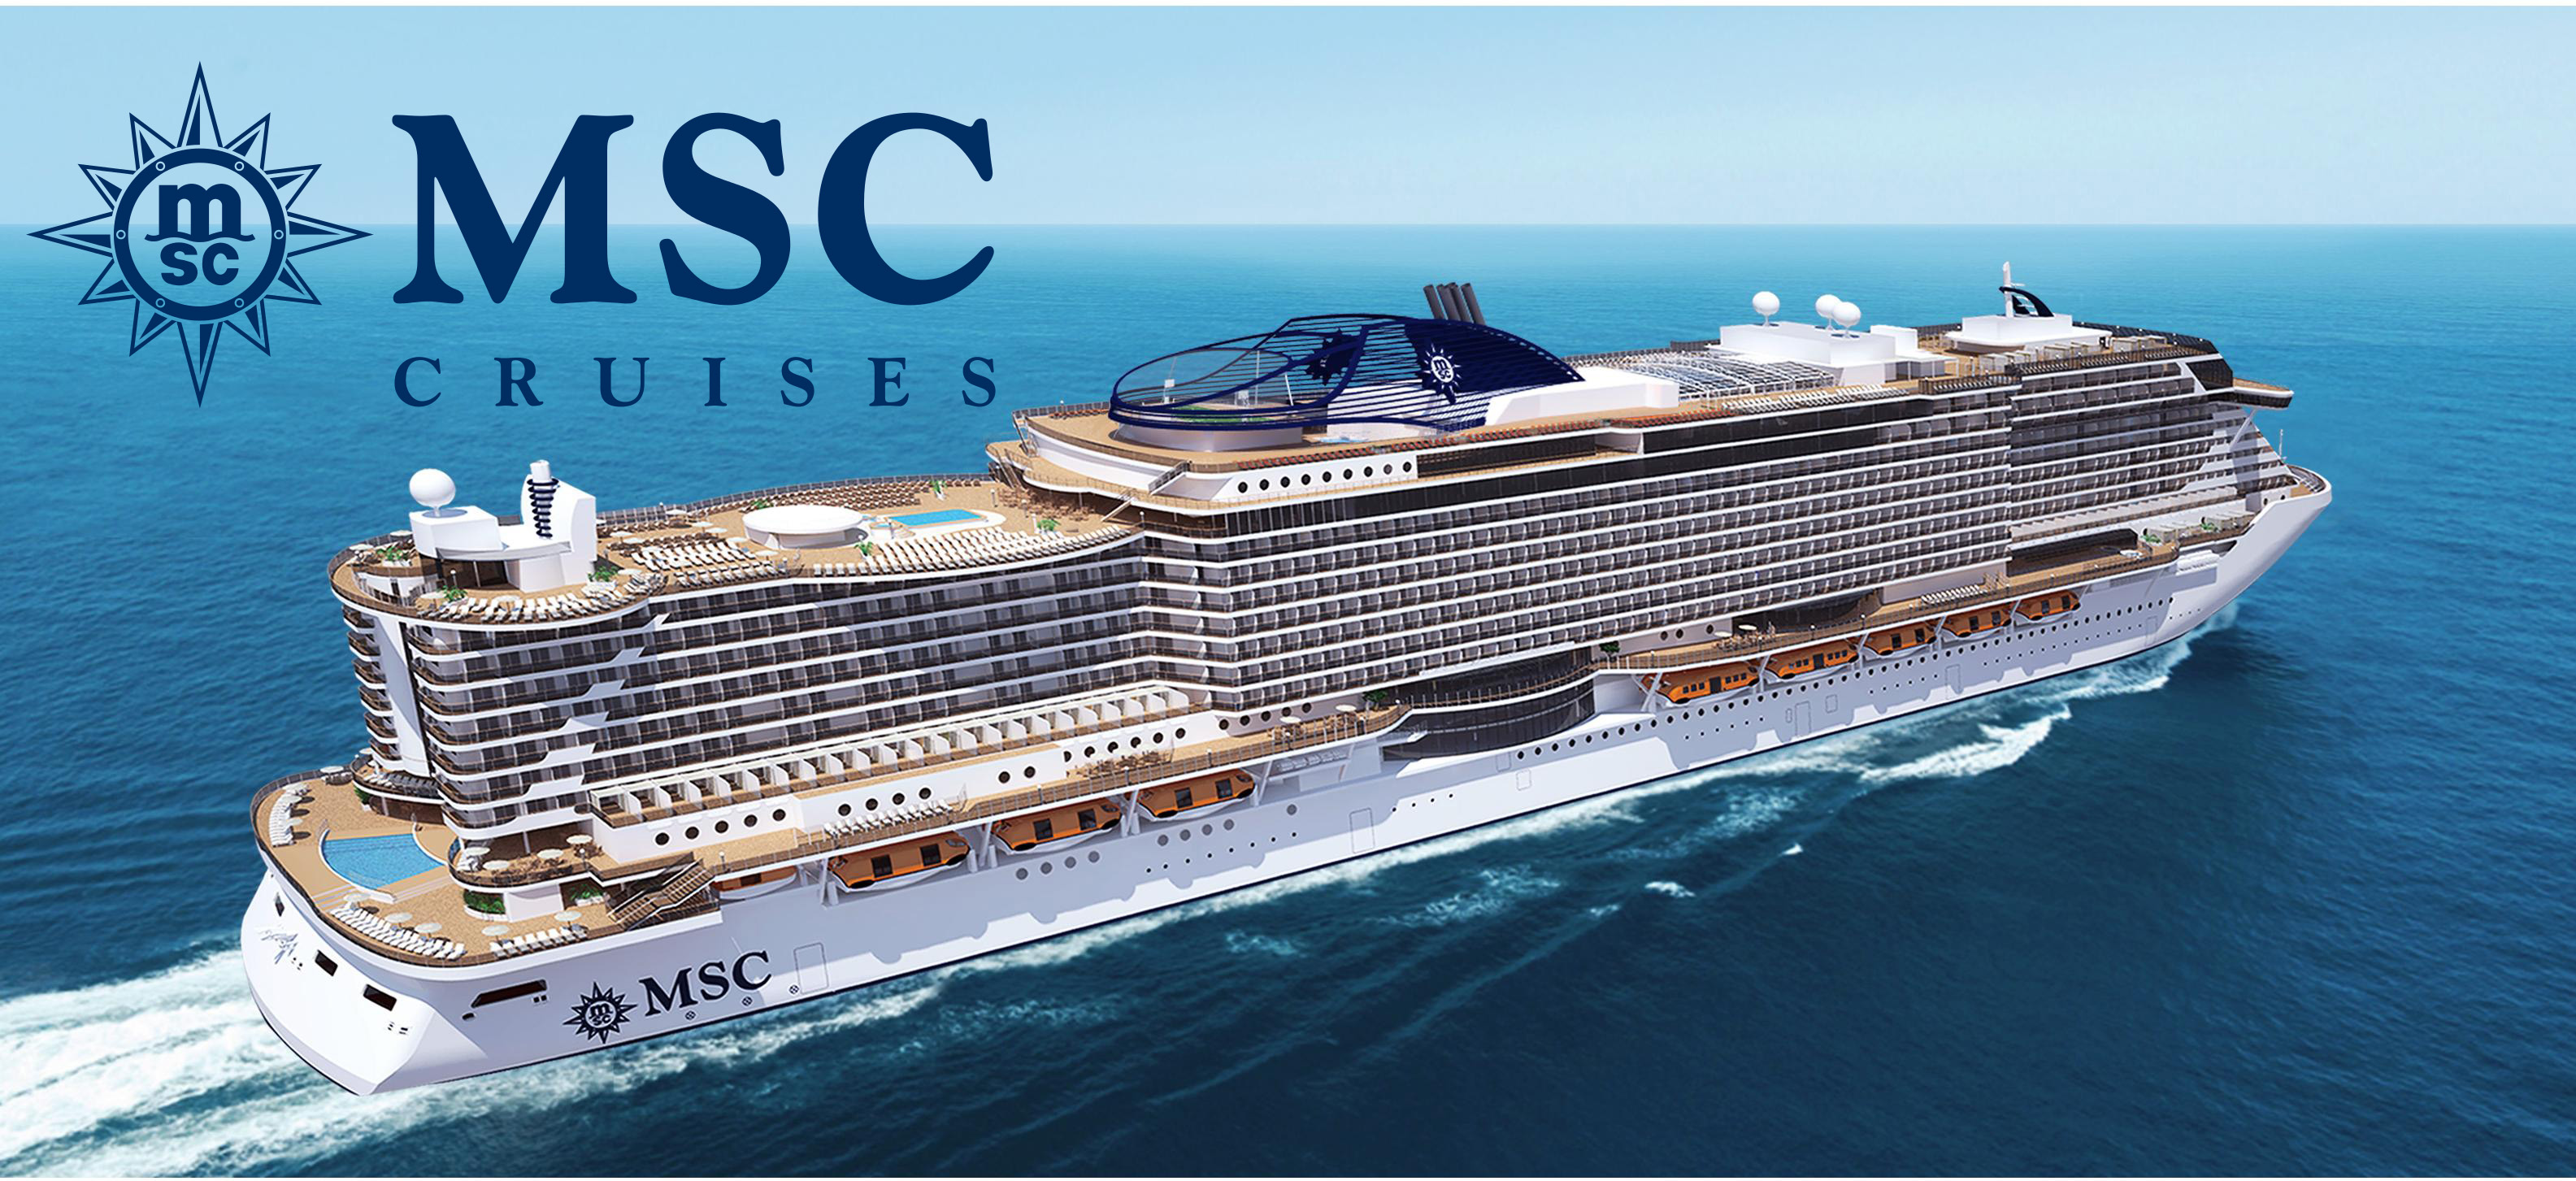 ทัวร์เรือสำราญ เอ็ม เอส ซี  MSC Cruises